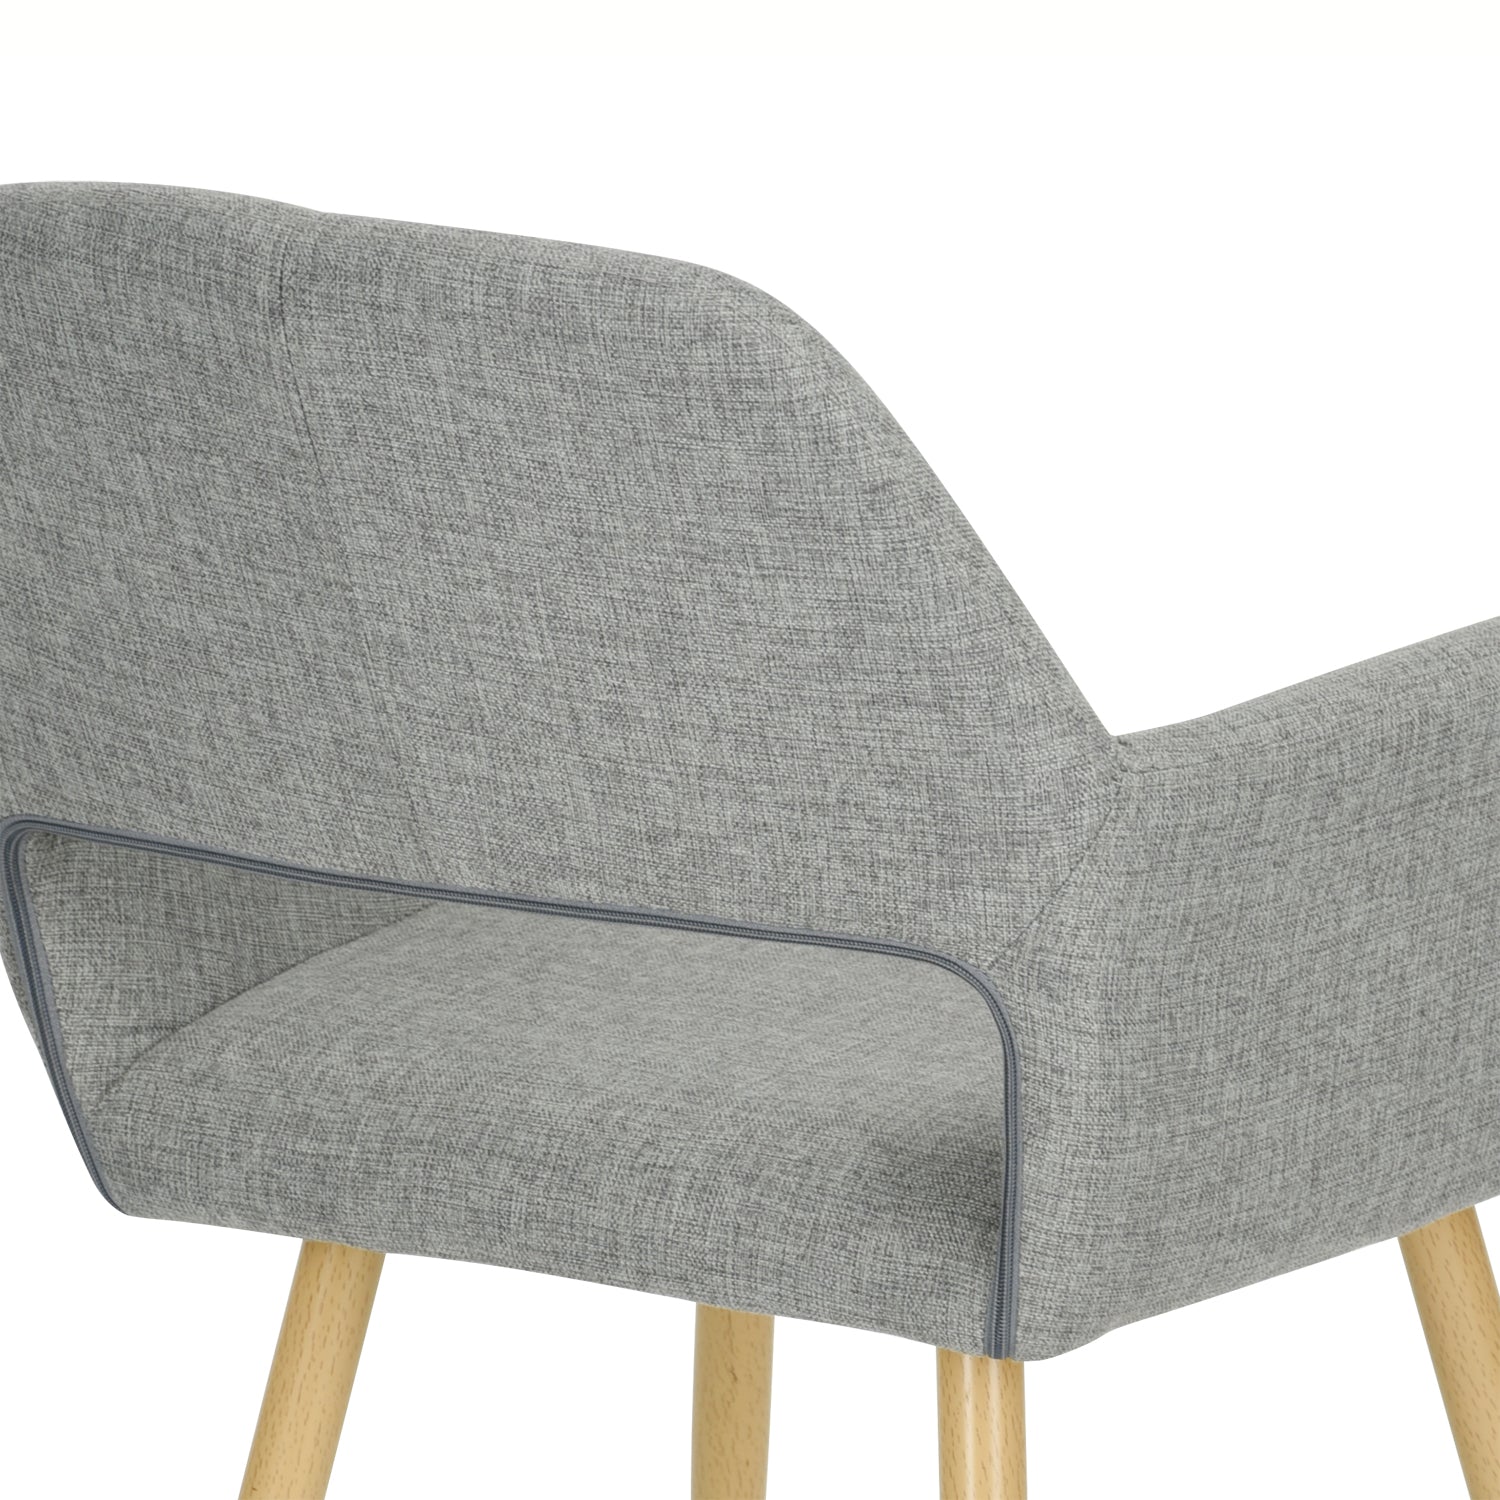 Lot de 2 chaises de salle à manger scandinaves confortable avec accoudoirs en tissu gris - CROMWELL 2PCS